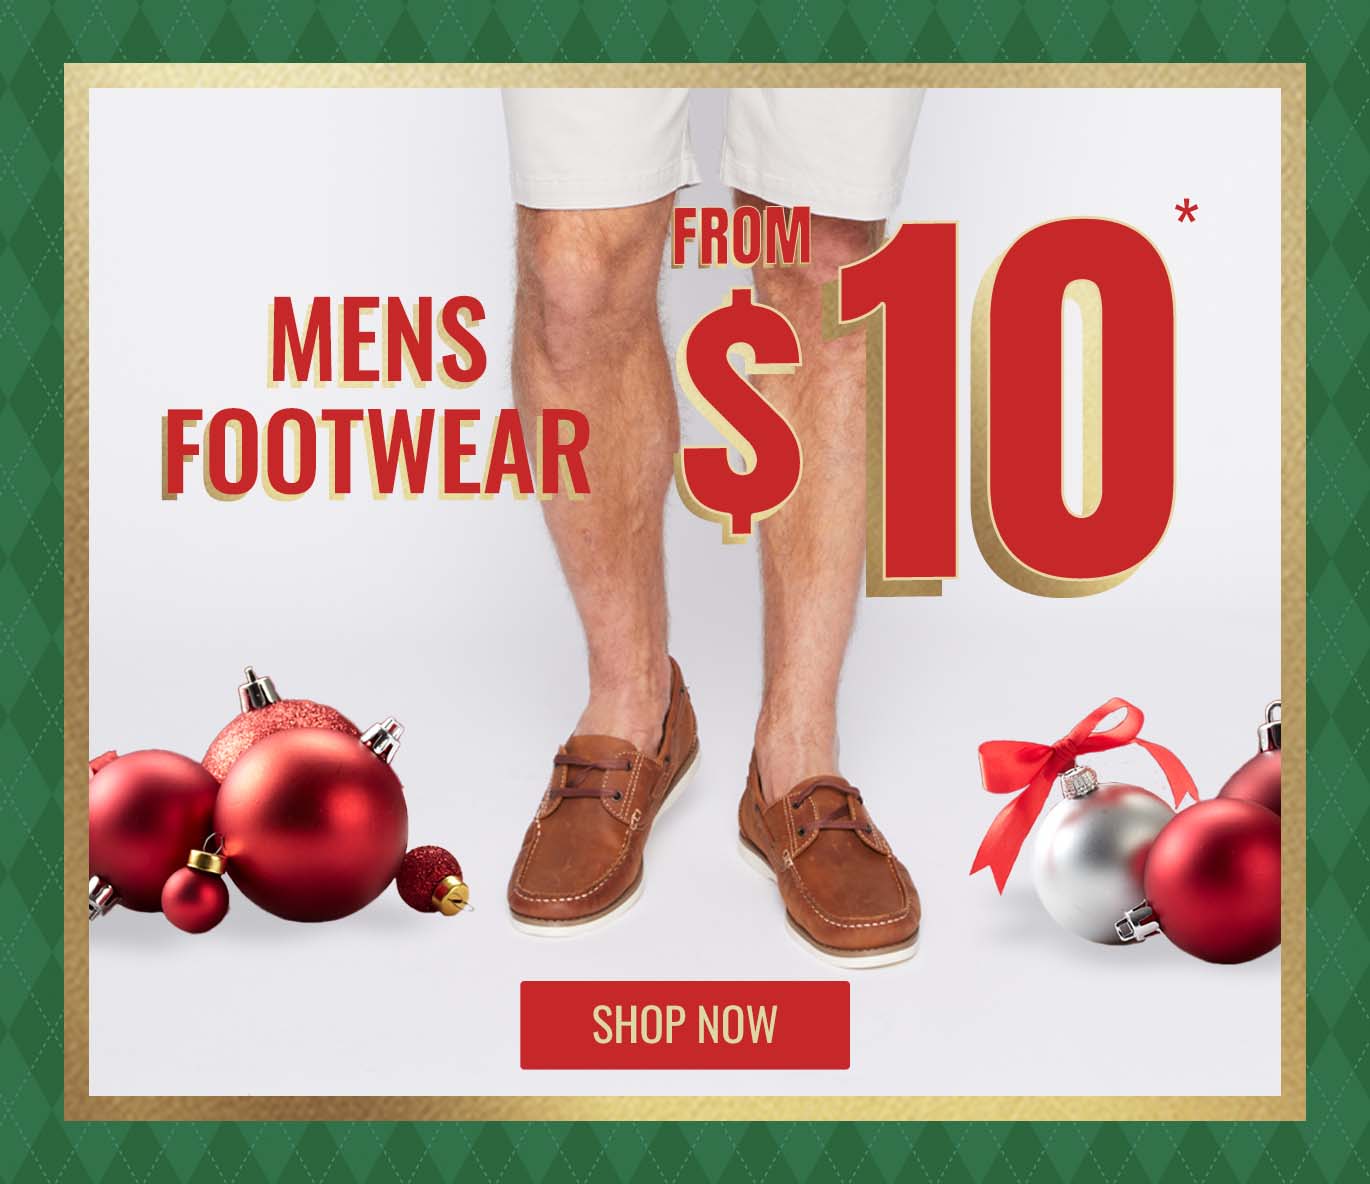 Rivers Mens Footwear form $10*